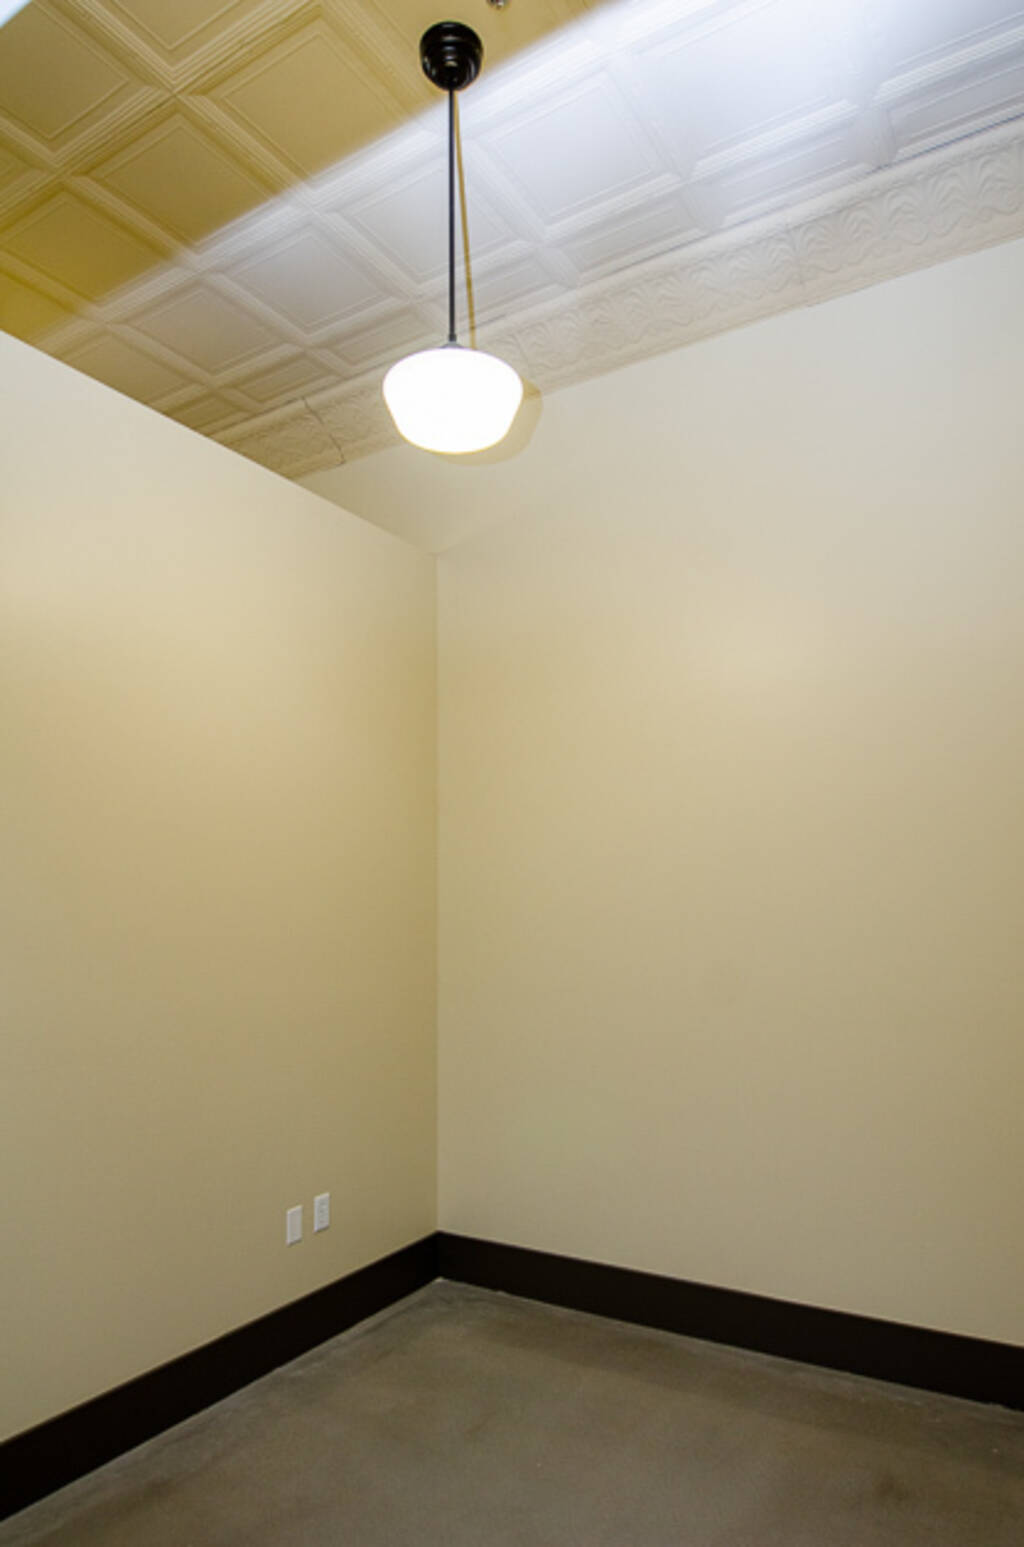 Suite C View of Hanging Light Fixture 